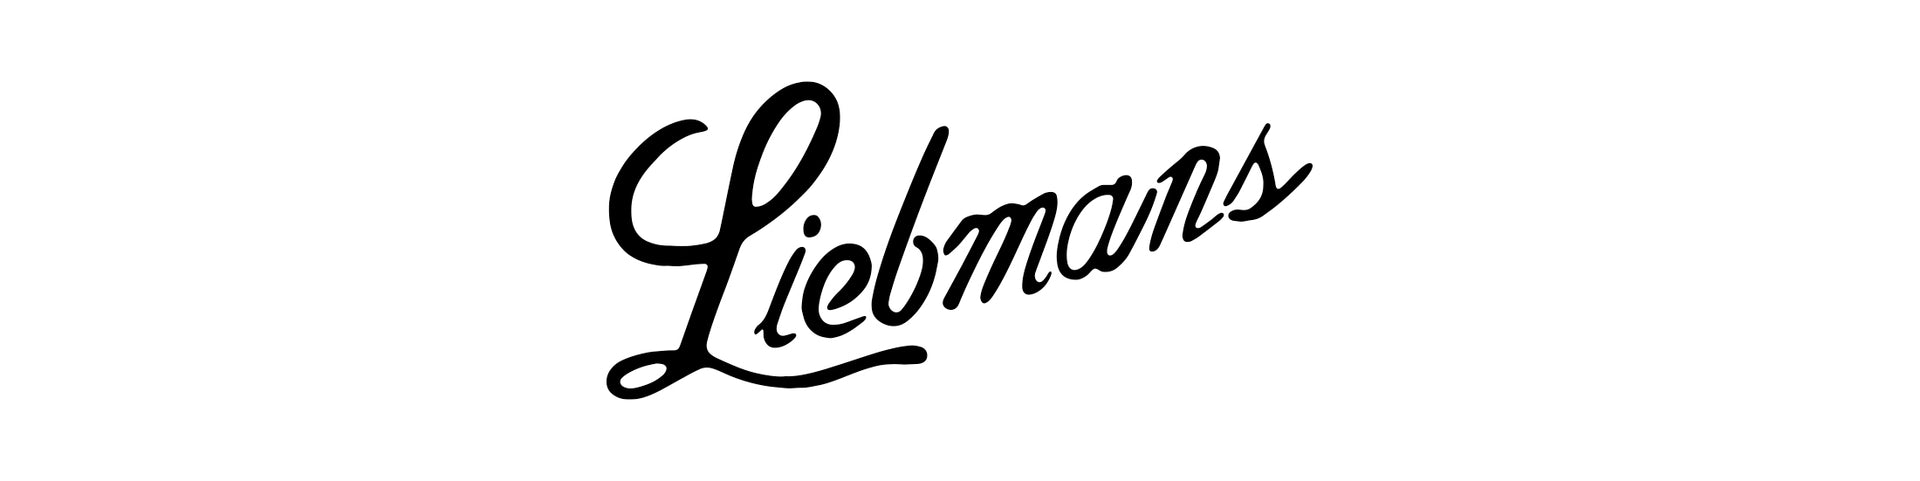 Liebman's Deli